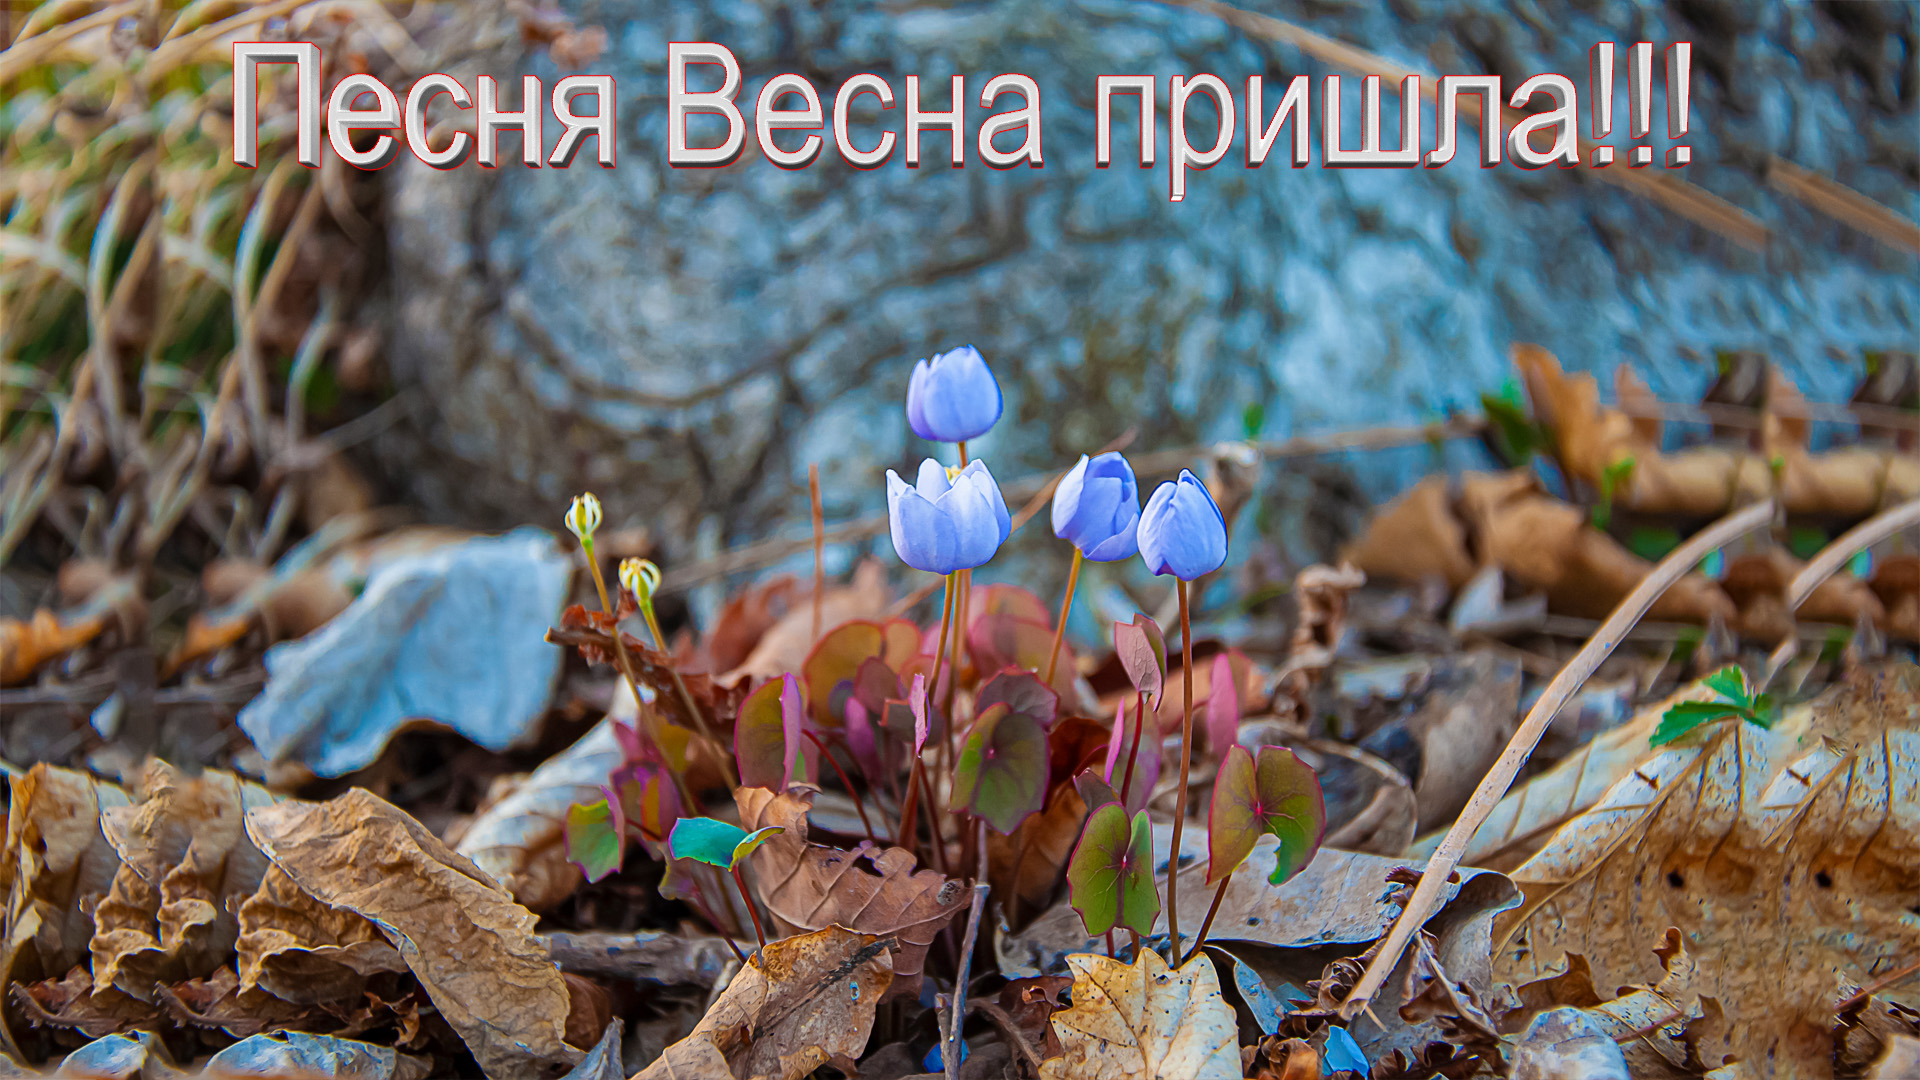 Песня весенний привет. Природа Приморского края весной. Дожить до весны. Весенняя страница.